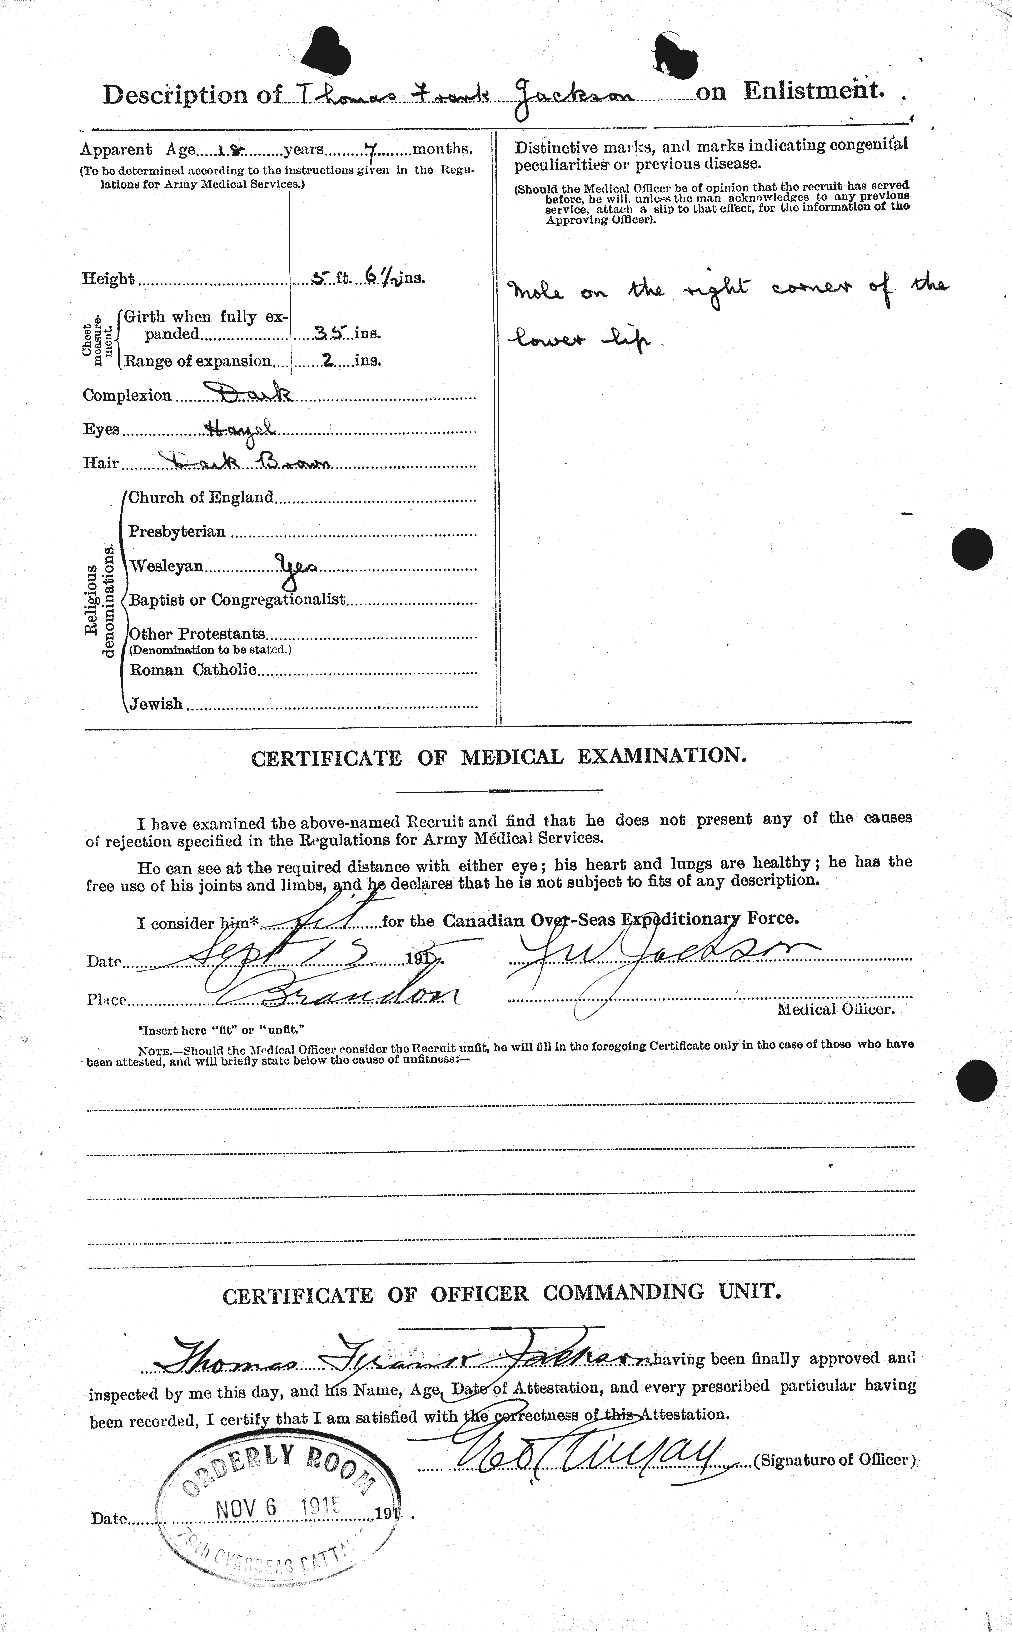 Dossiers du Personnel de la Première Guerre mondiale - CEC 412326b